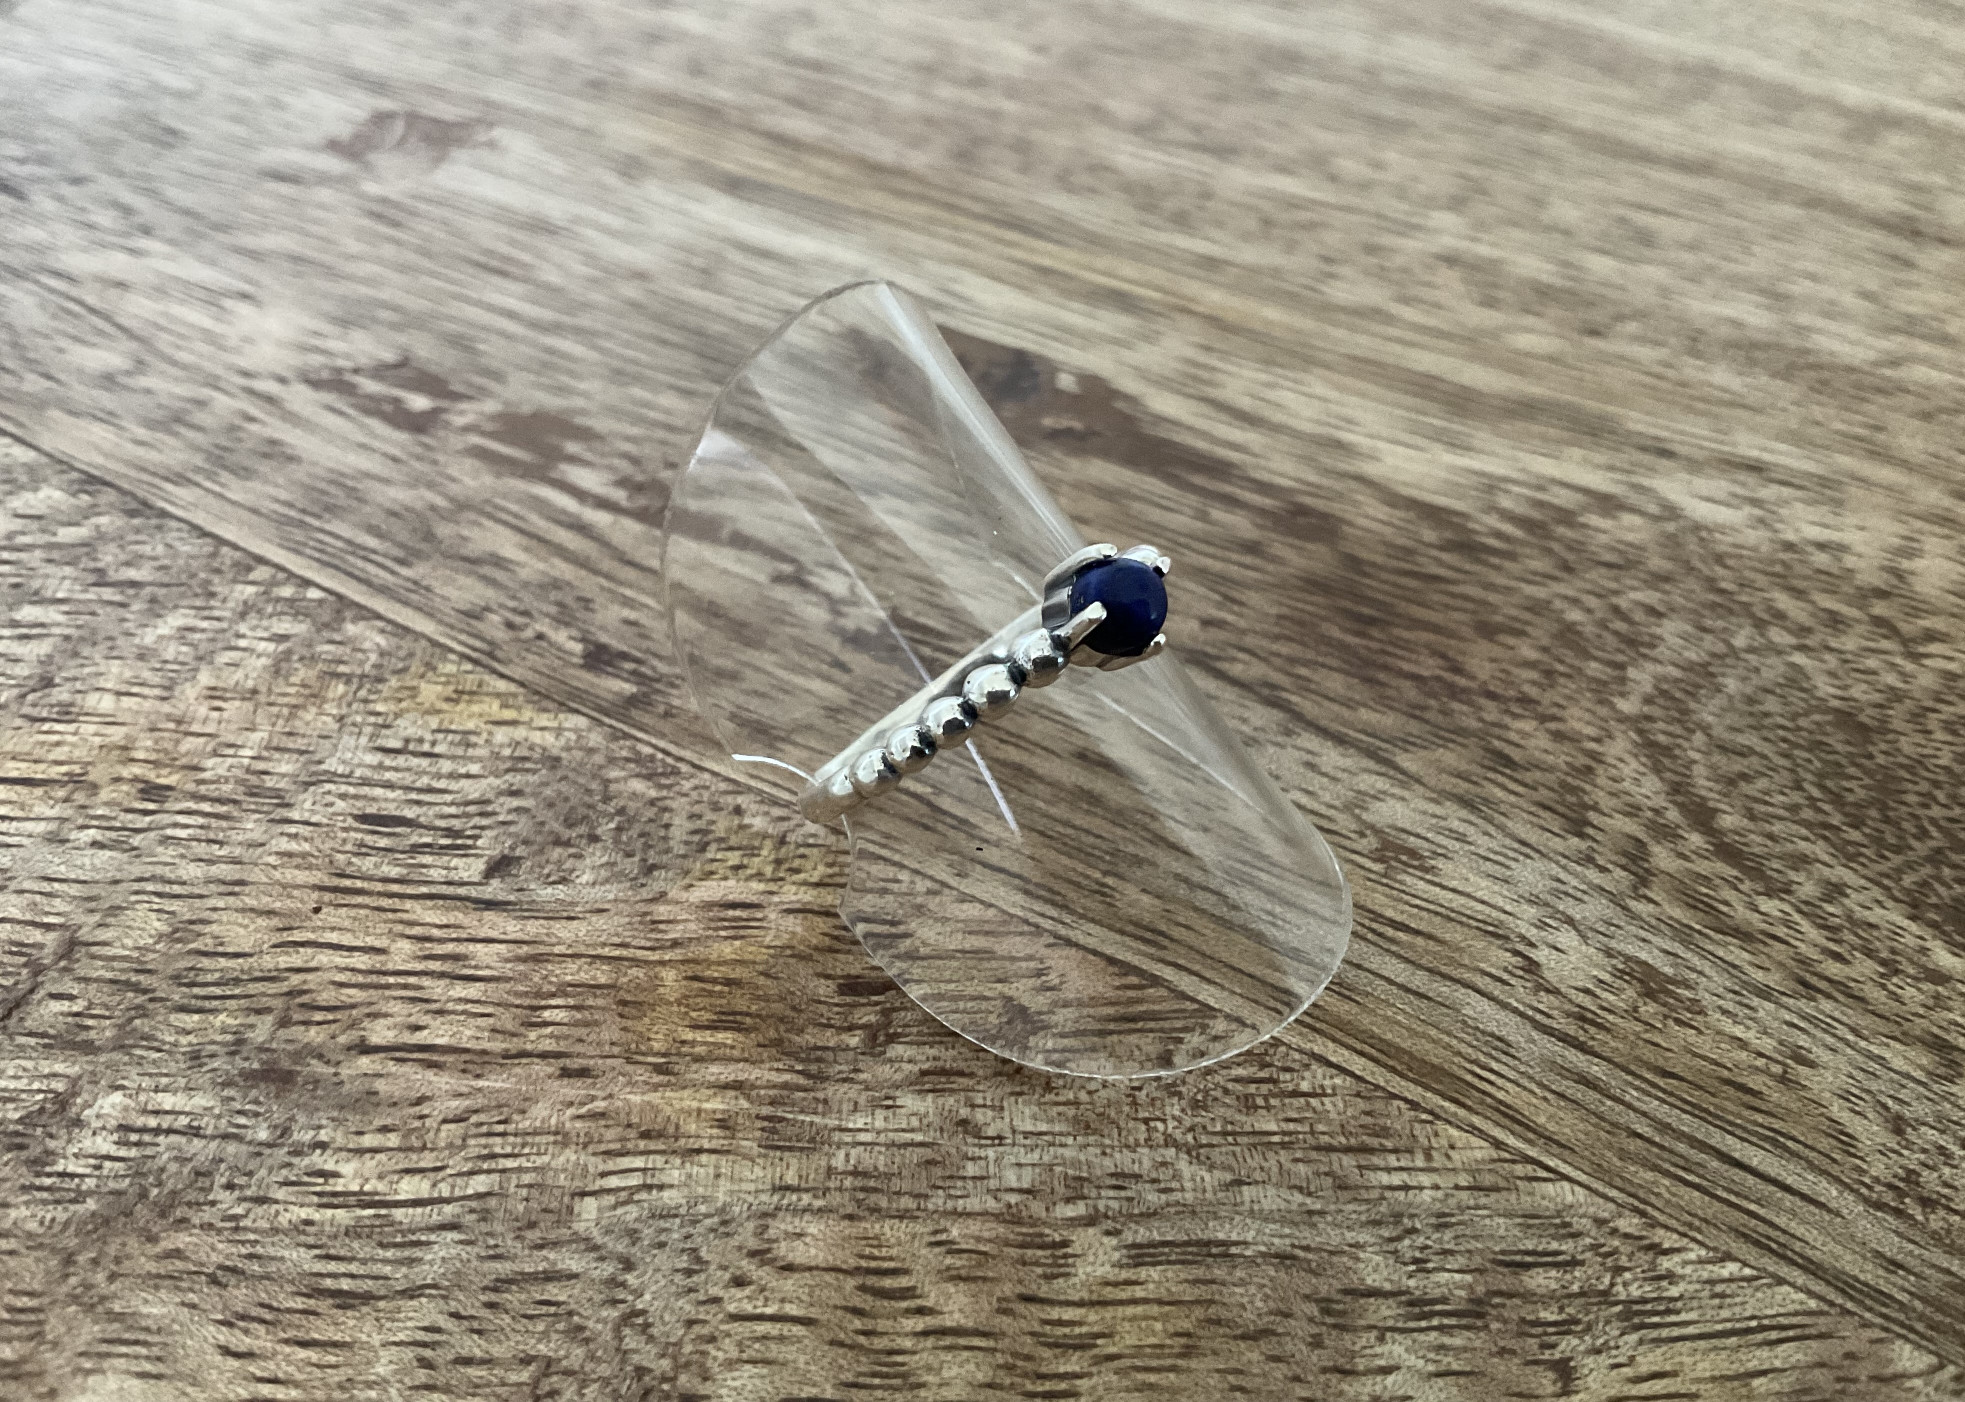 Lapis Lazuli Bead Ring